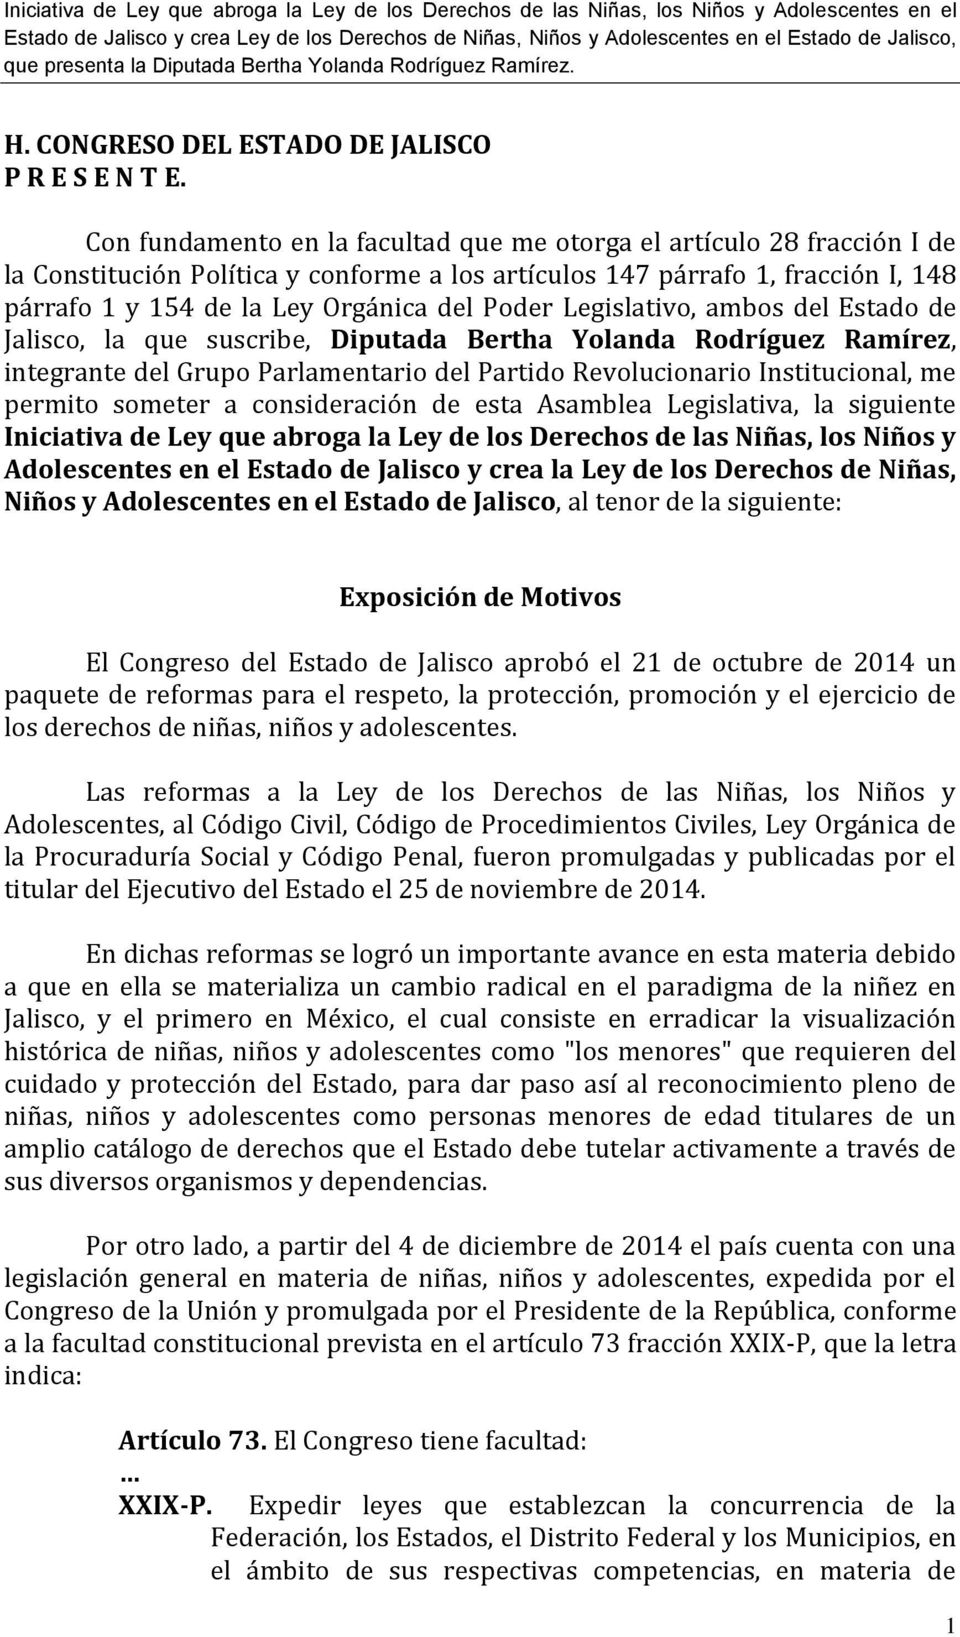 Poder Legislativo, ambos del Estado de Jalisco, la que suscribe, Diputada Bertha Yolanda Rodríguez Ramírez, integrante del Grupo Parlamentario del Partido Revolucionario Institucional, me permito